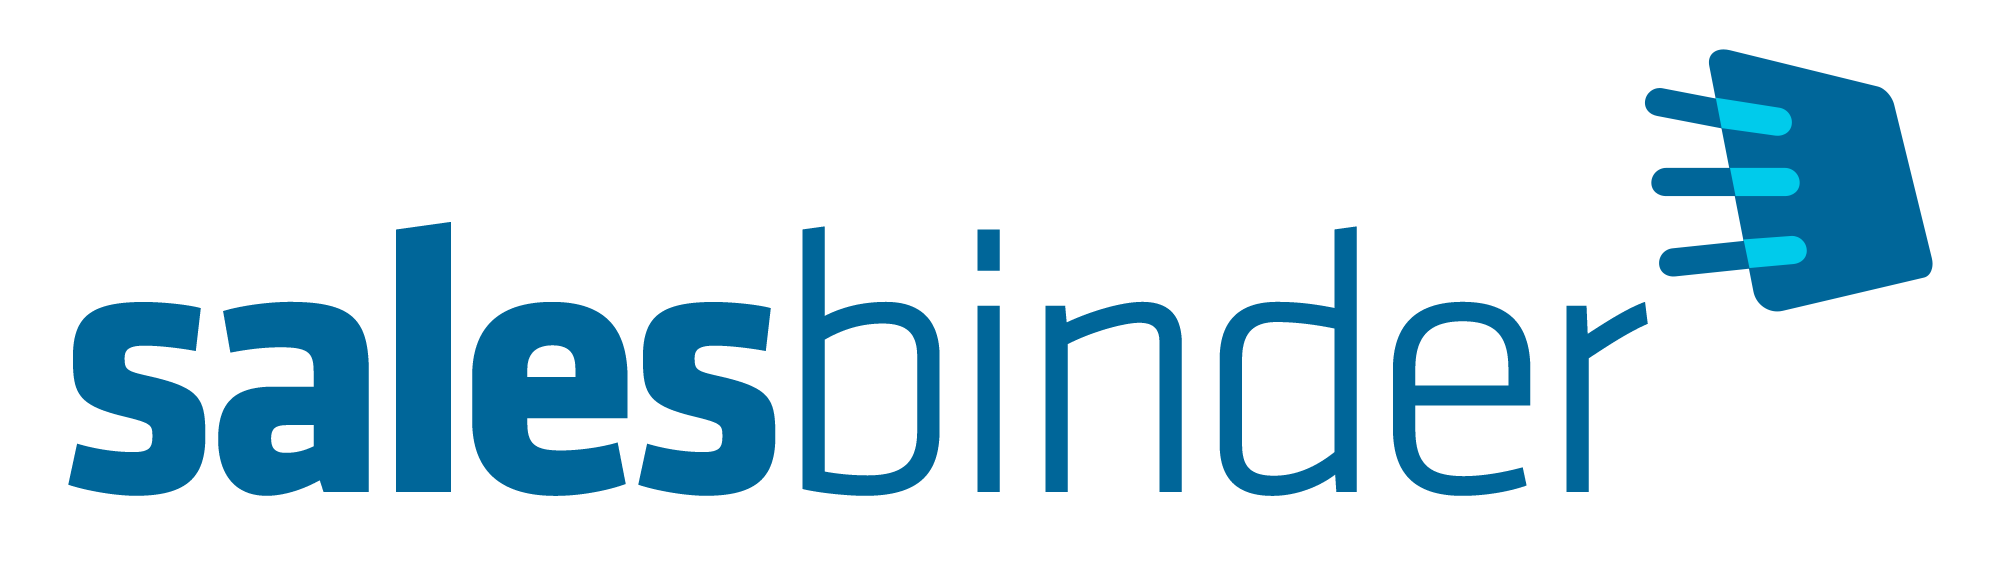 salesbinder logo